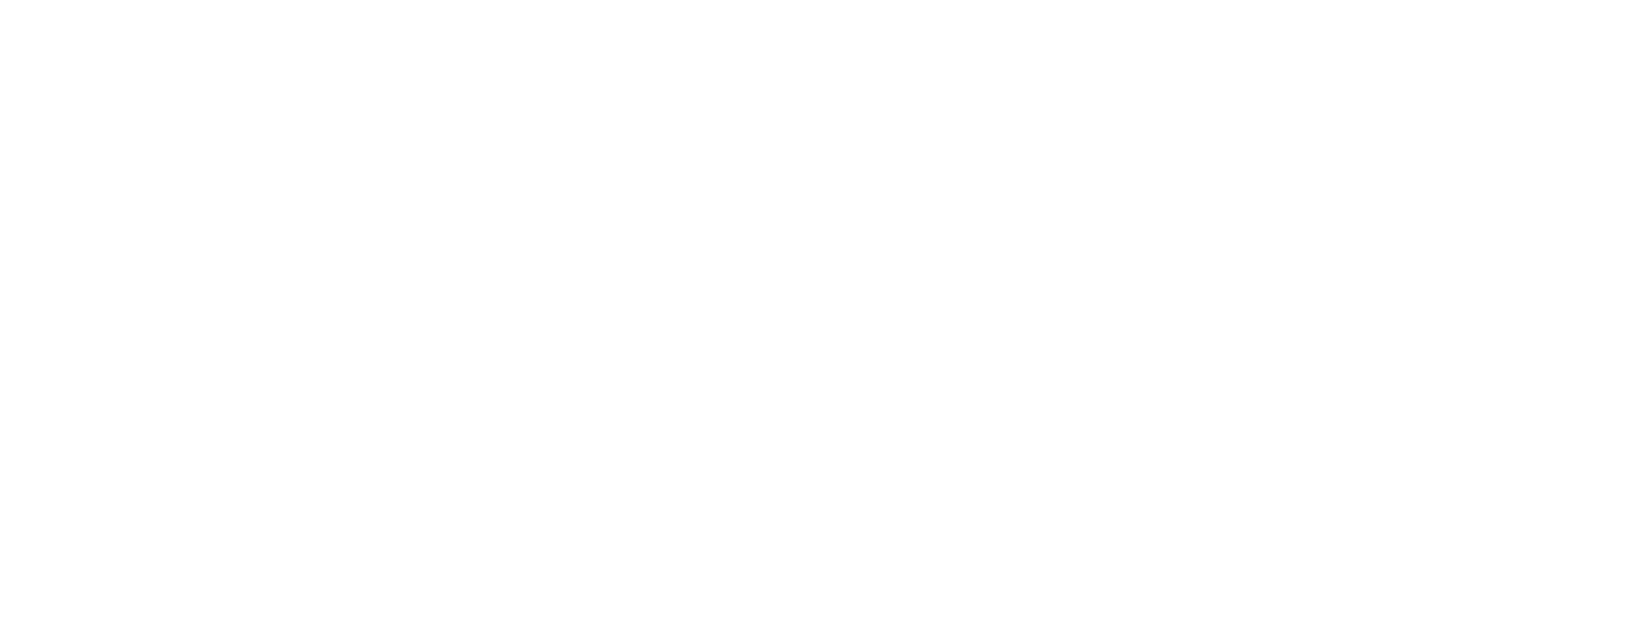 CSX Corporation logo pour fonds sombres (PNG transparent)